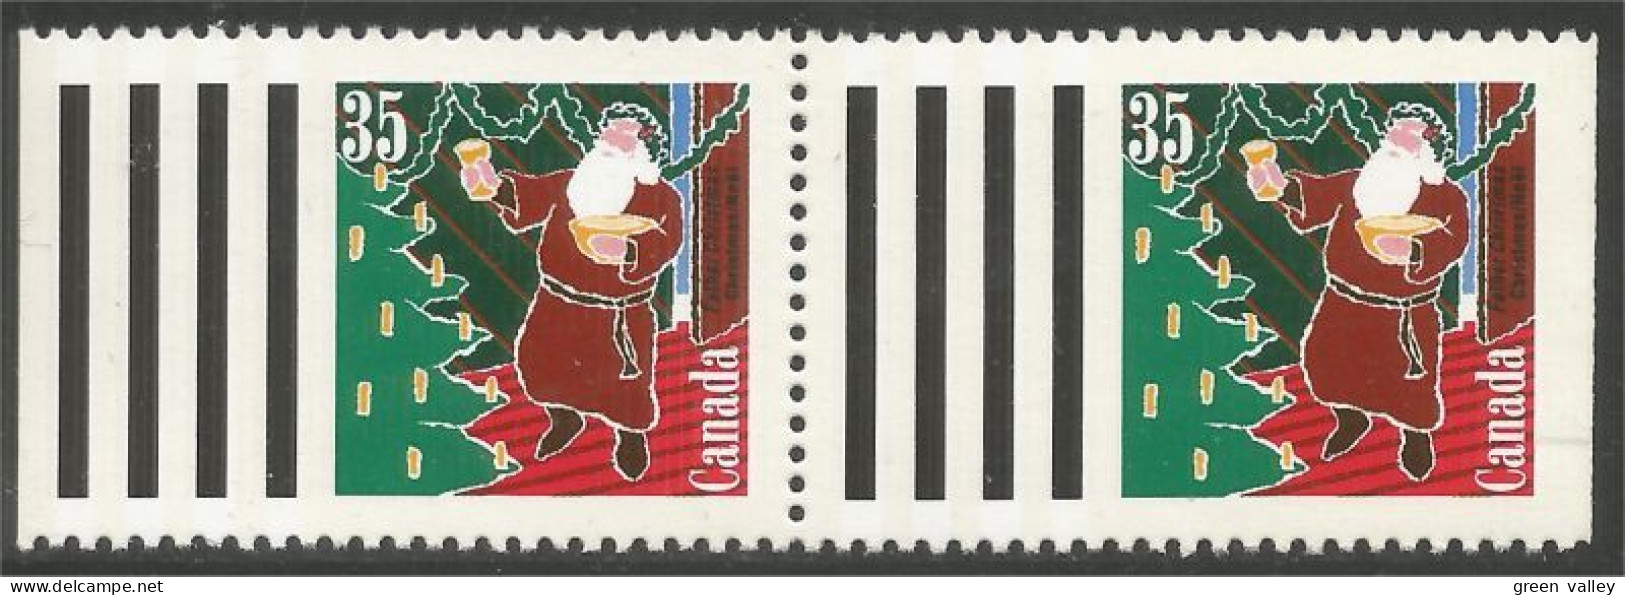 Canada Pere Noel Santa Claus MNH ** Neuf SC (C13-42pr) - Ungebraucht